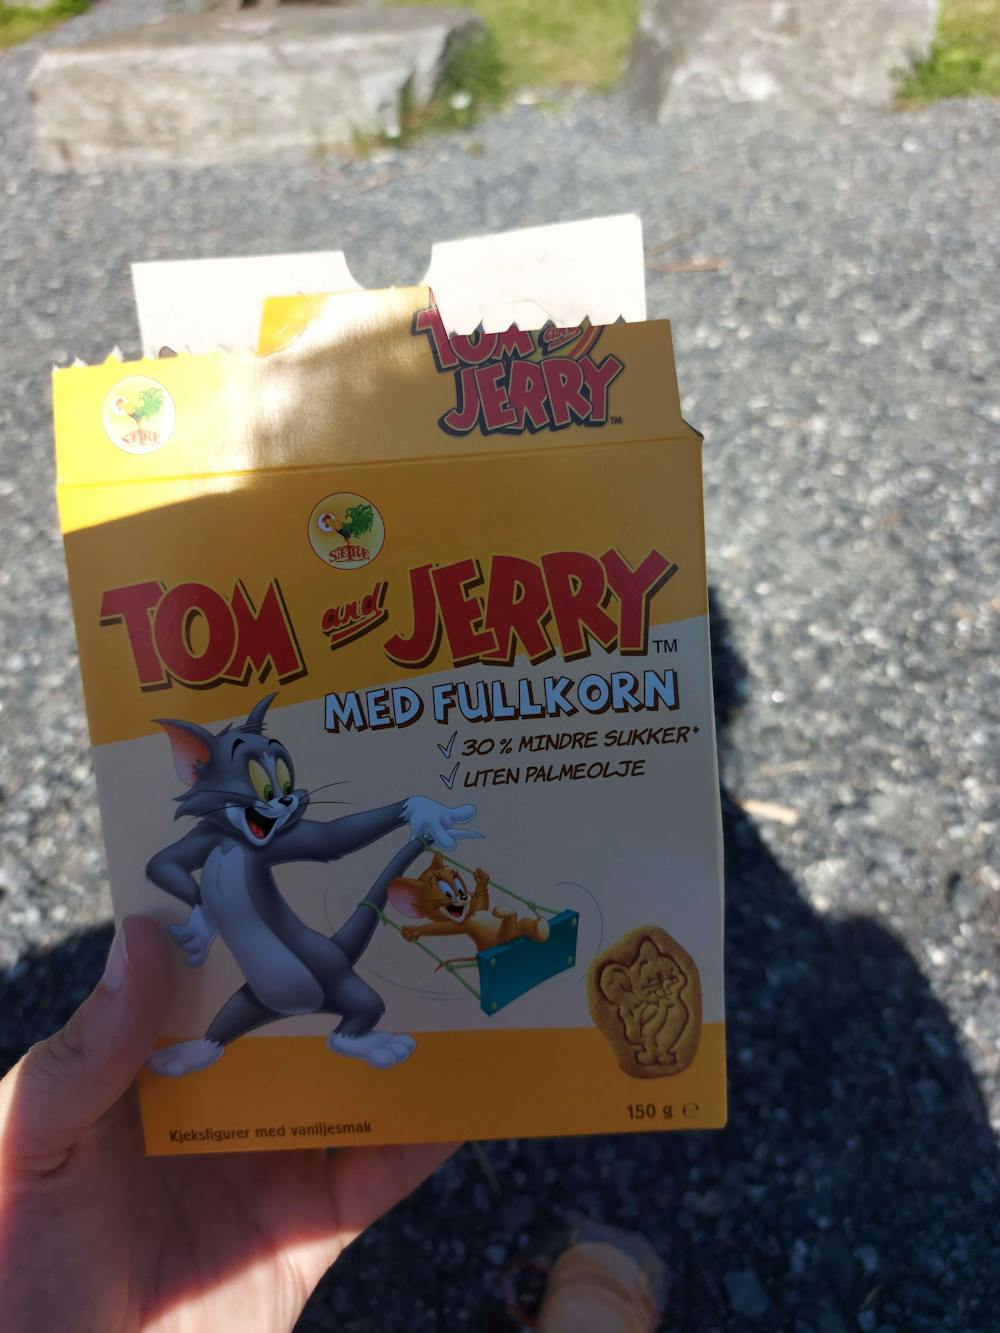 Tom and Jerry, med fullkorn, Sætre